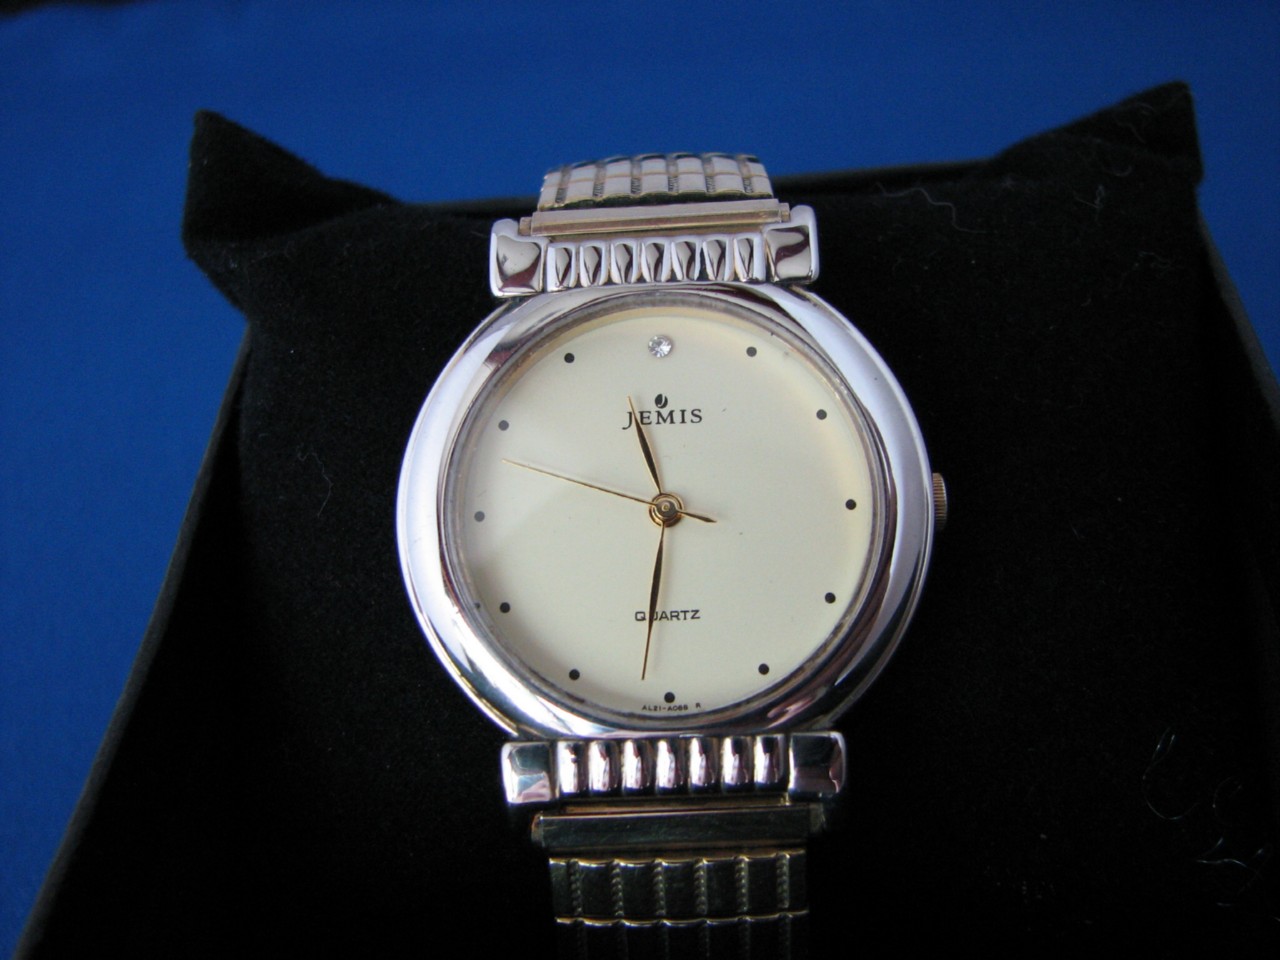 Jemis quartz watch with Speidel Band | eBay